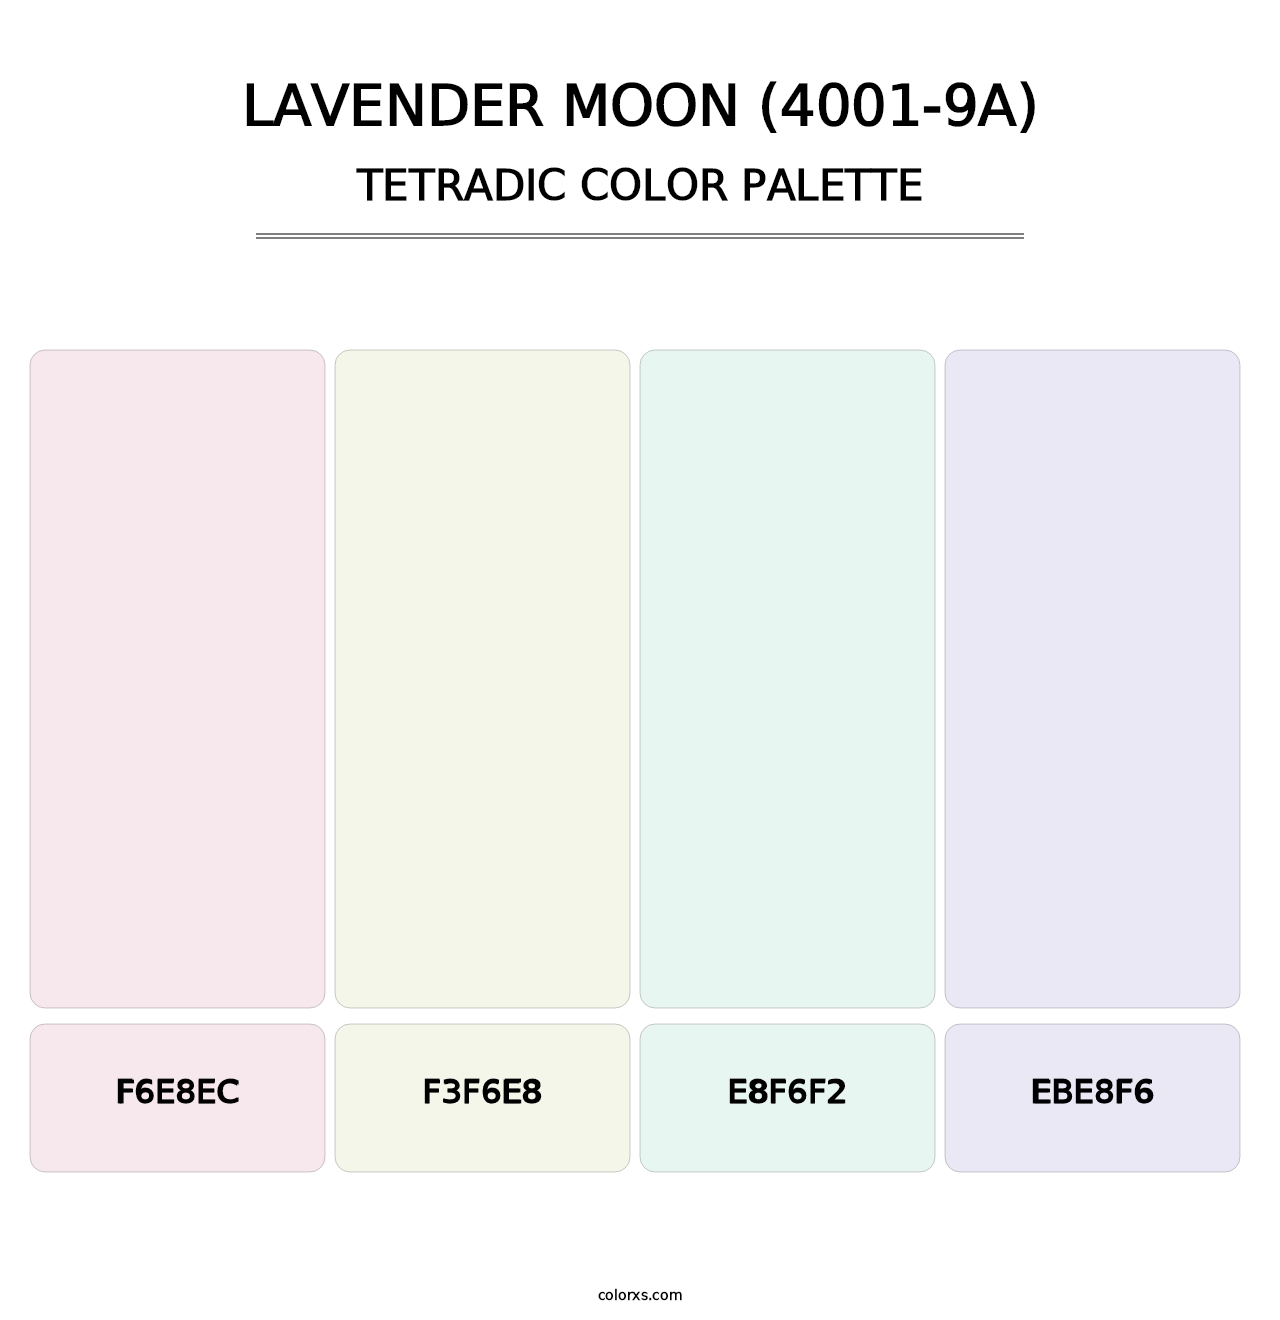 Lavender Moon (4001-9A) - Tetradic Color Palette